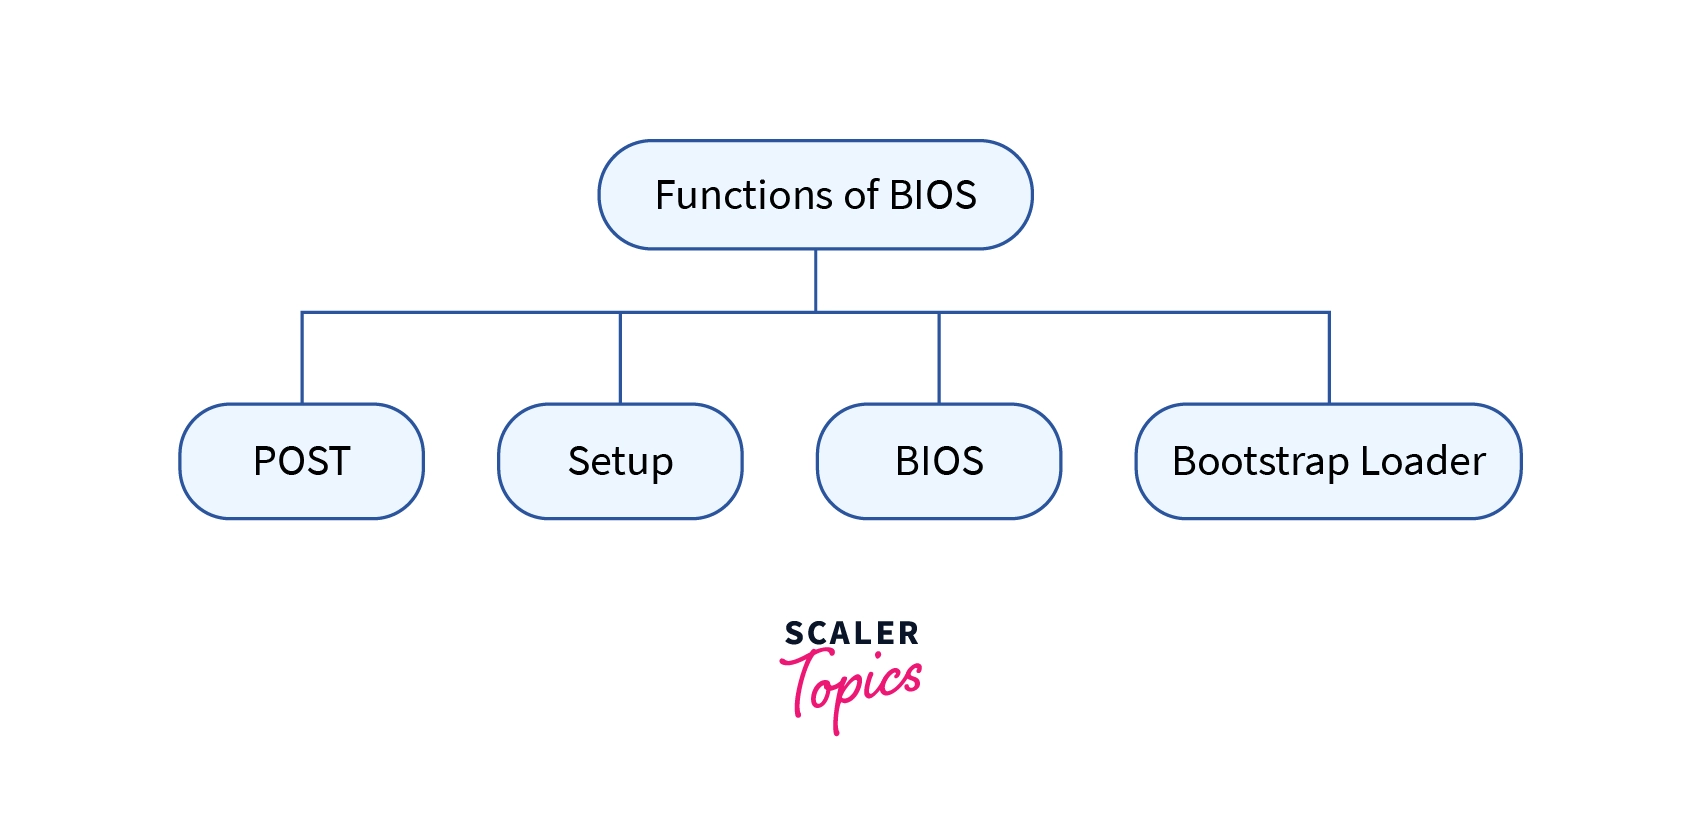 Functions of BIOS